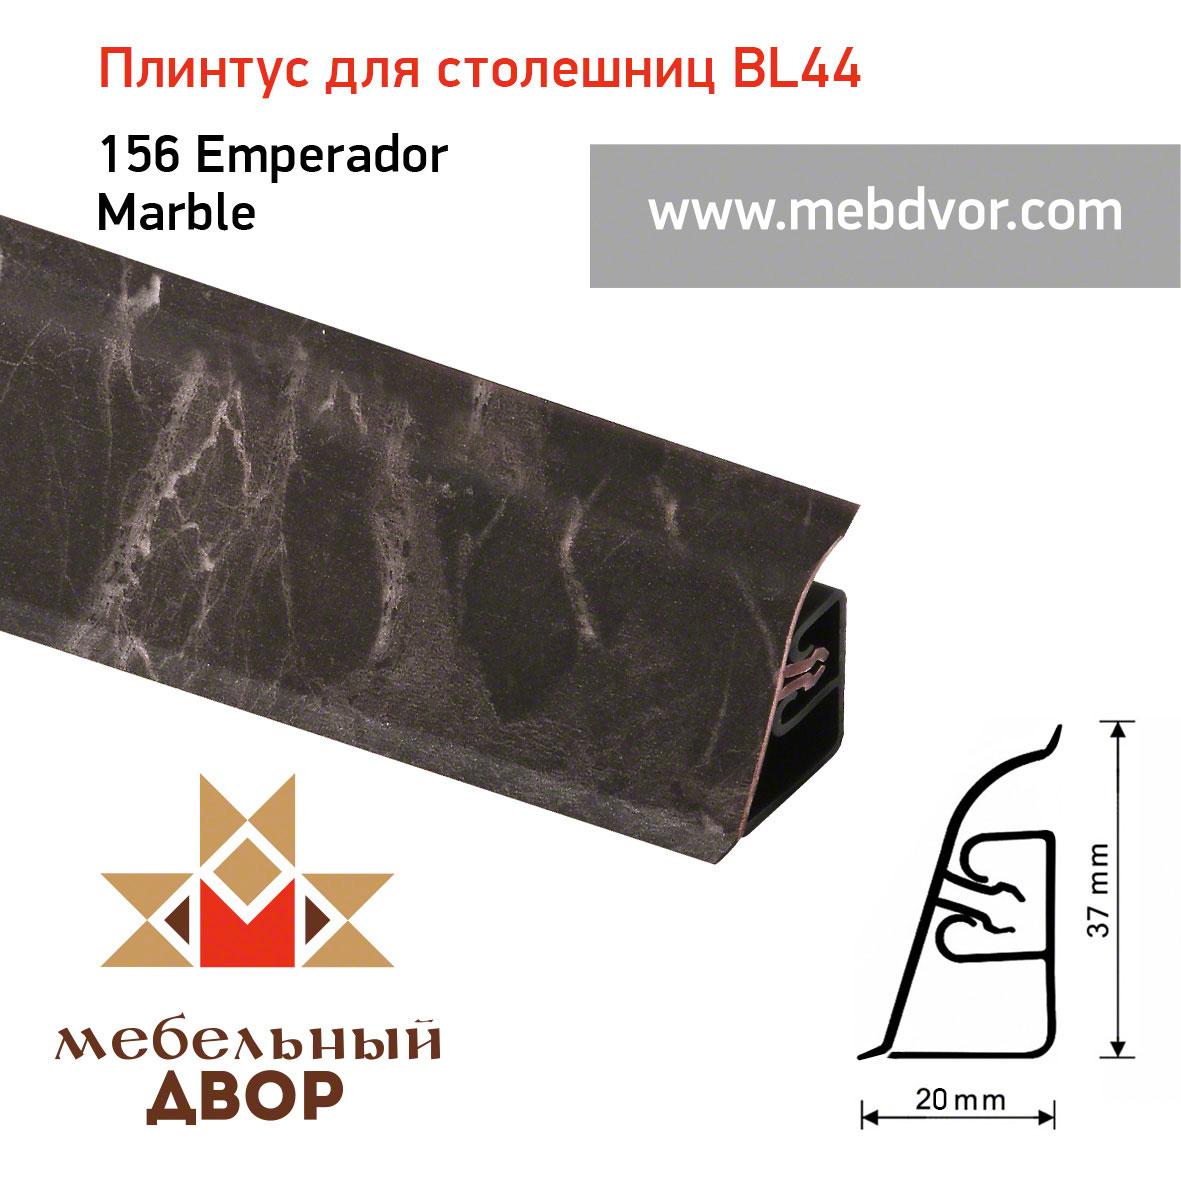 Плинтус для столешниц  BL-44_156 Emperador Marble